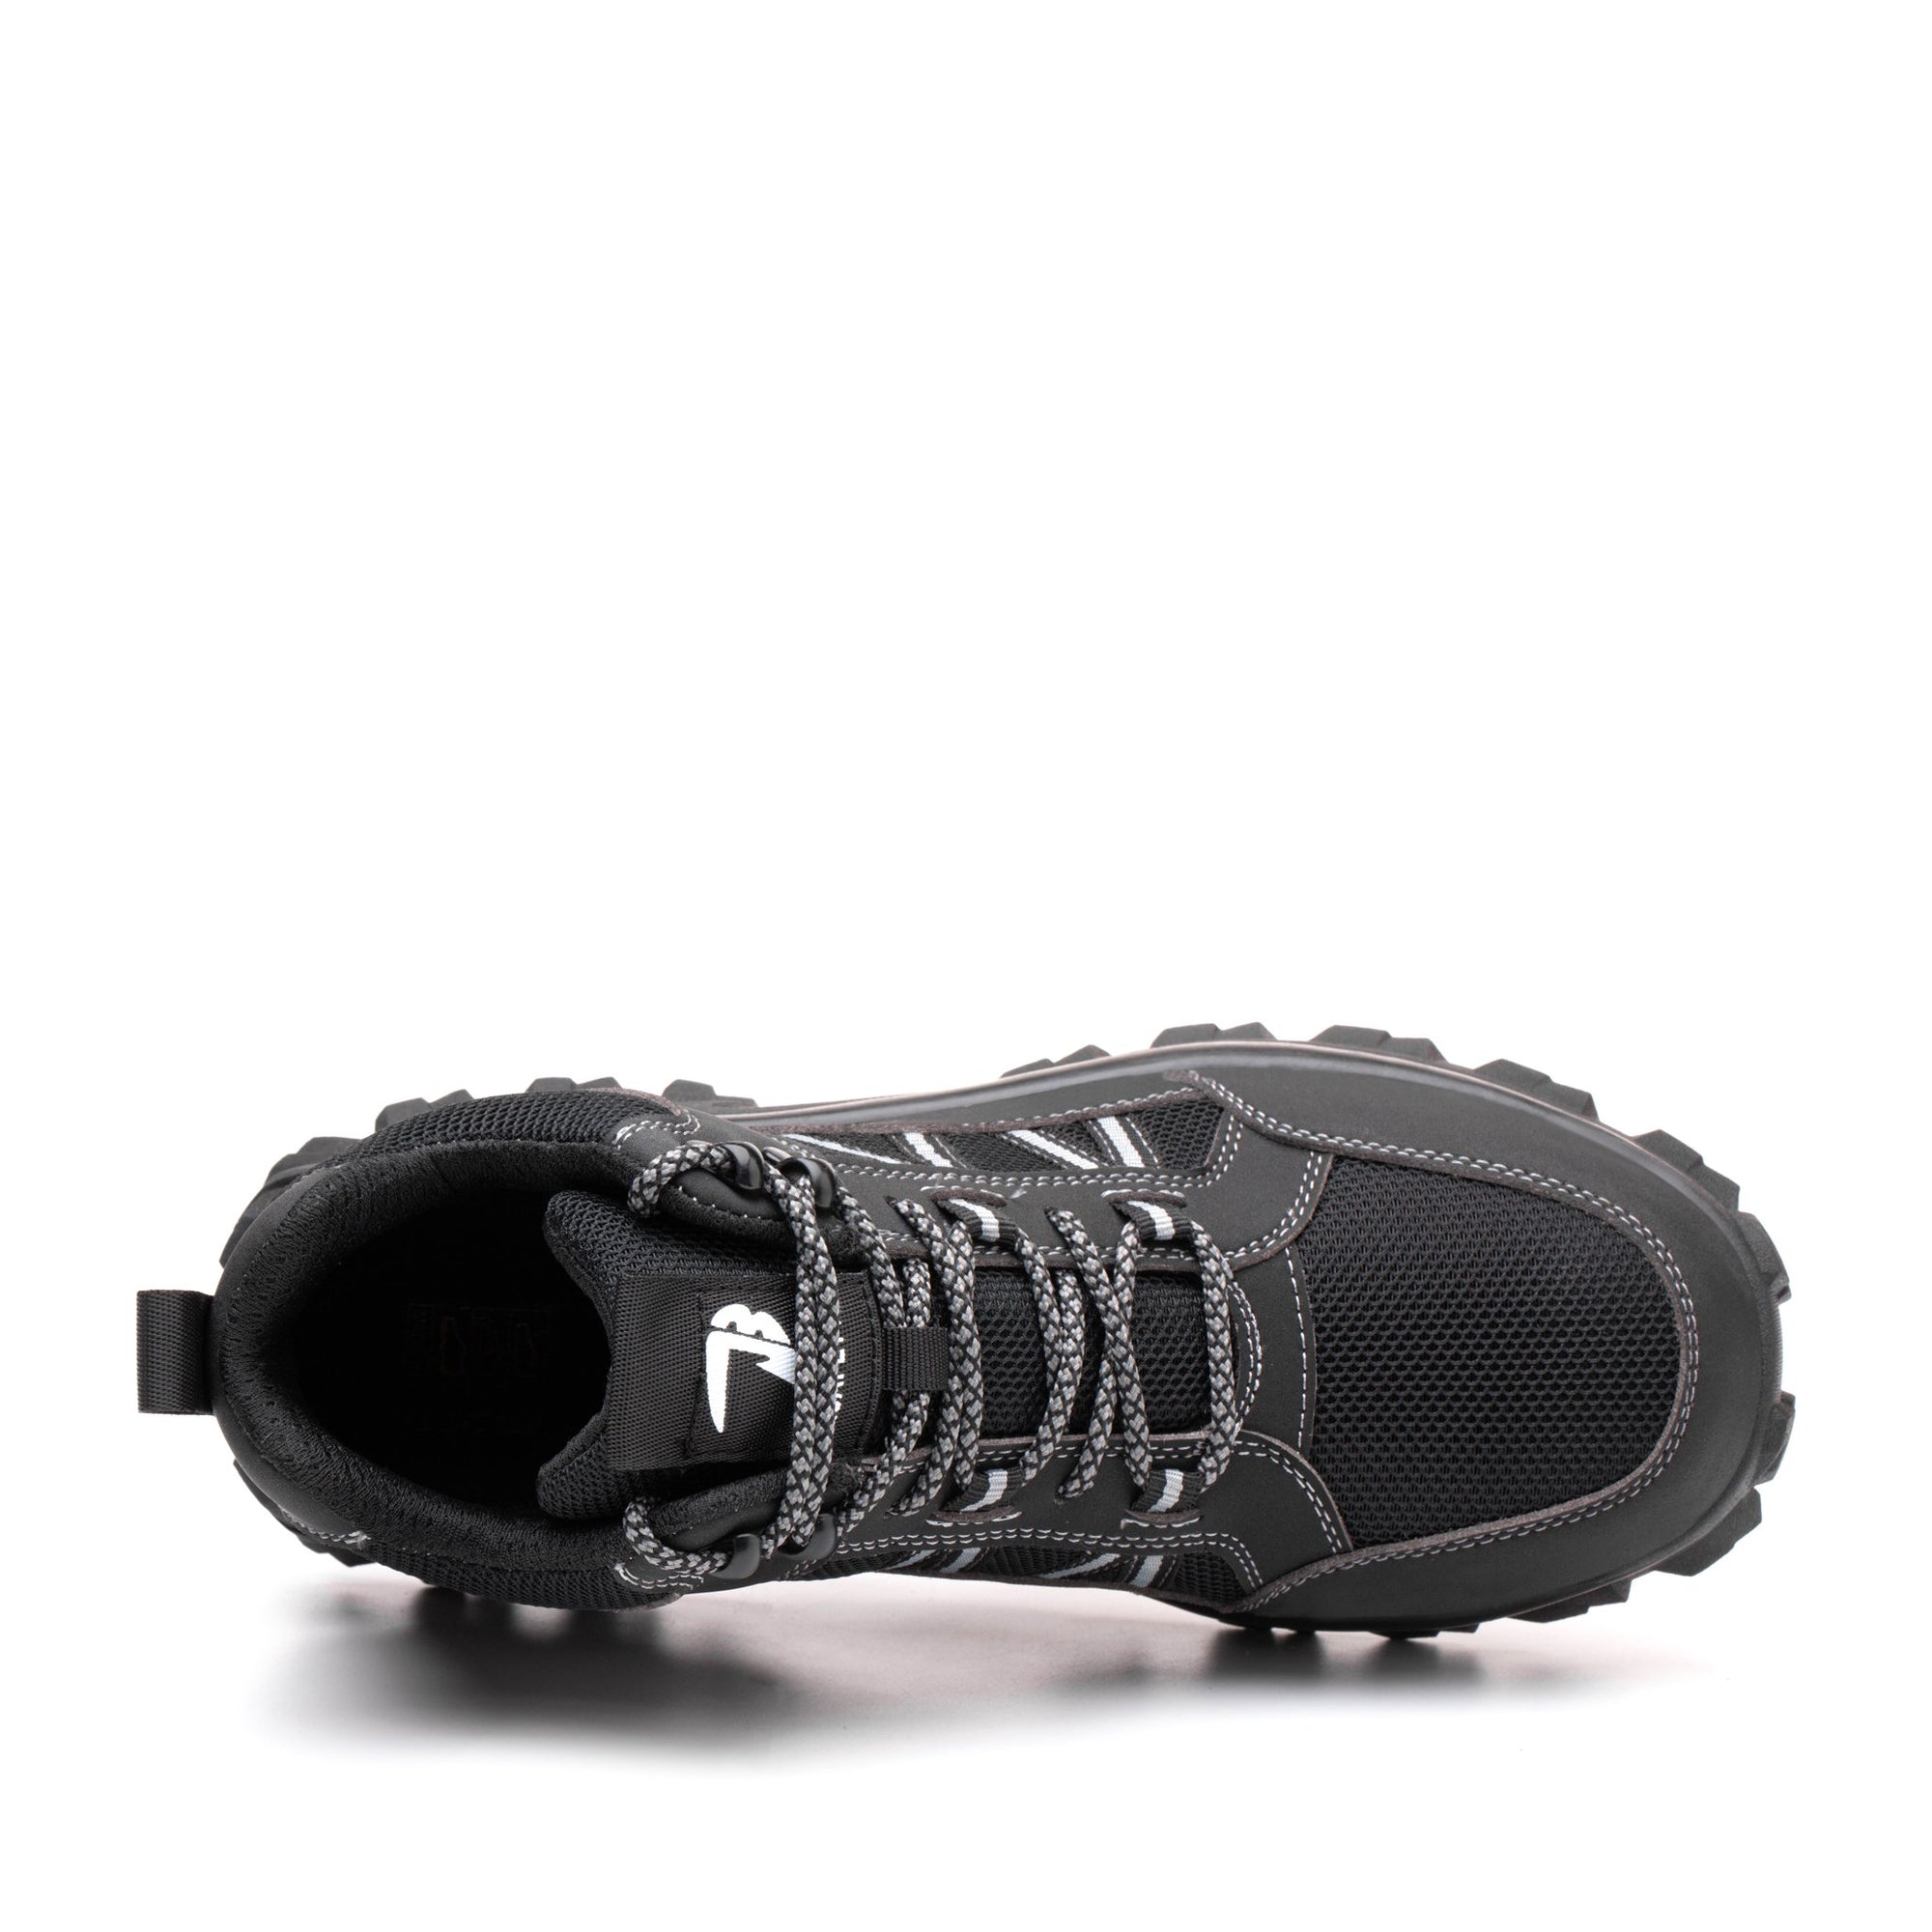 Fable Black - Indestructible Shoes